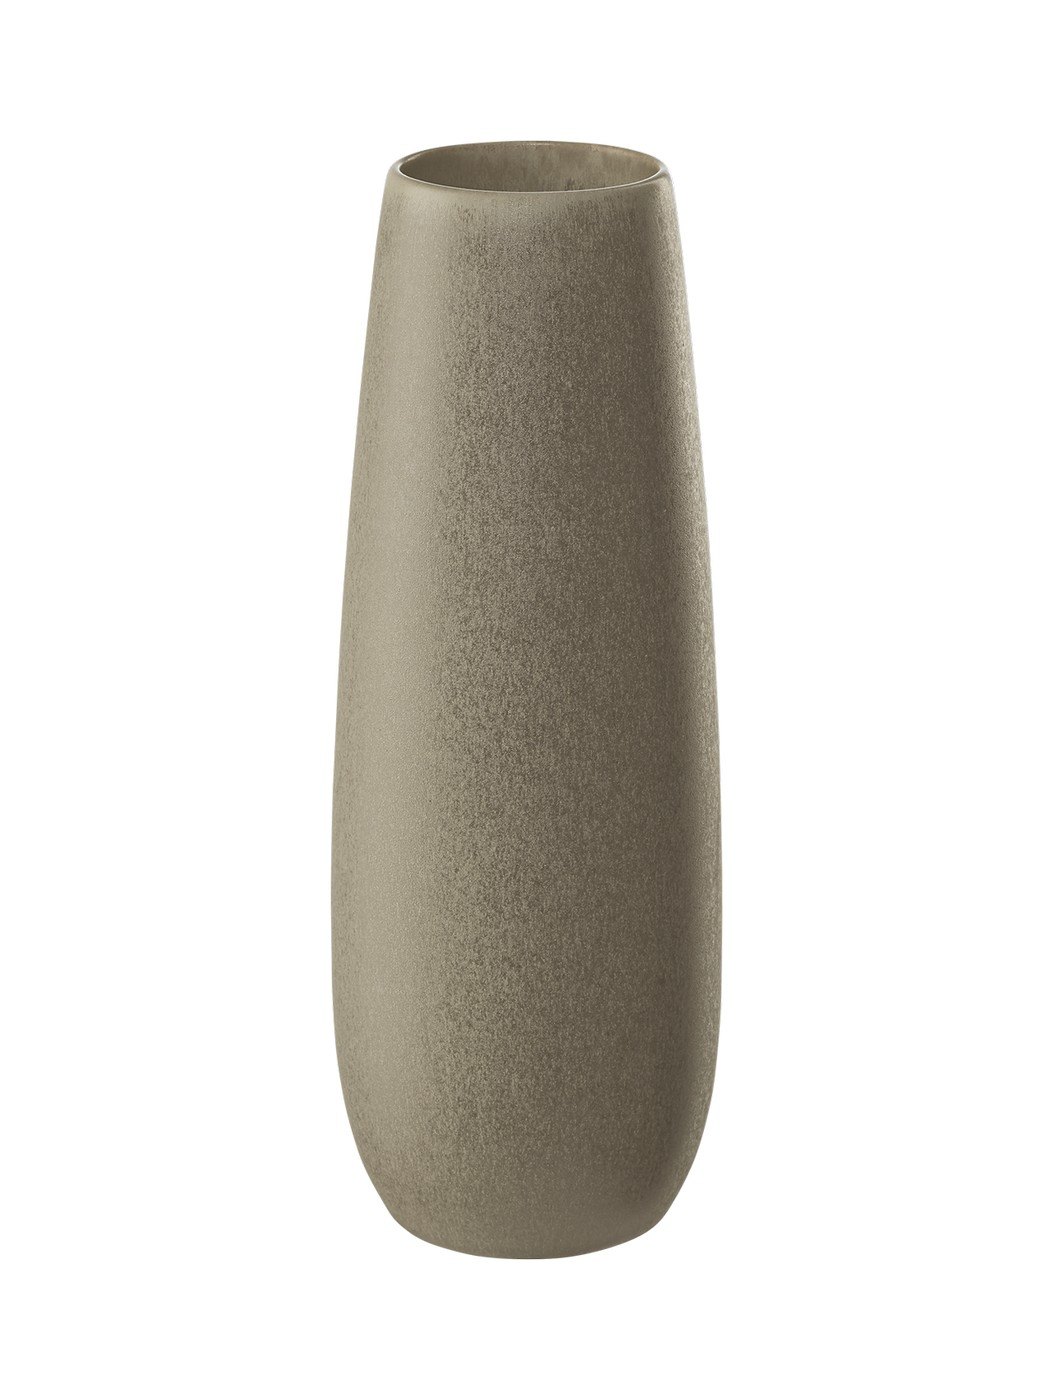 Kameninová váza výška 25 cm EASE STONE ASA Selection - hnědá